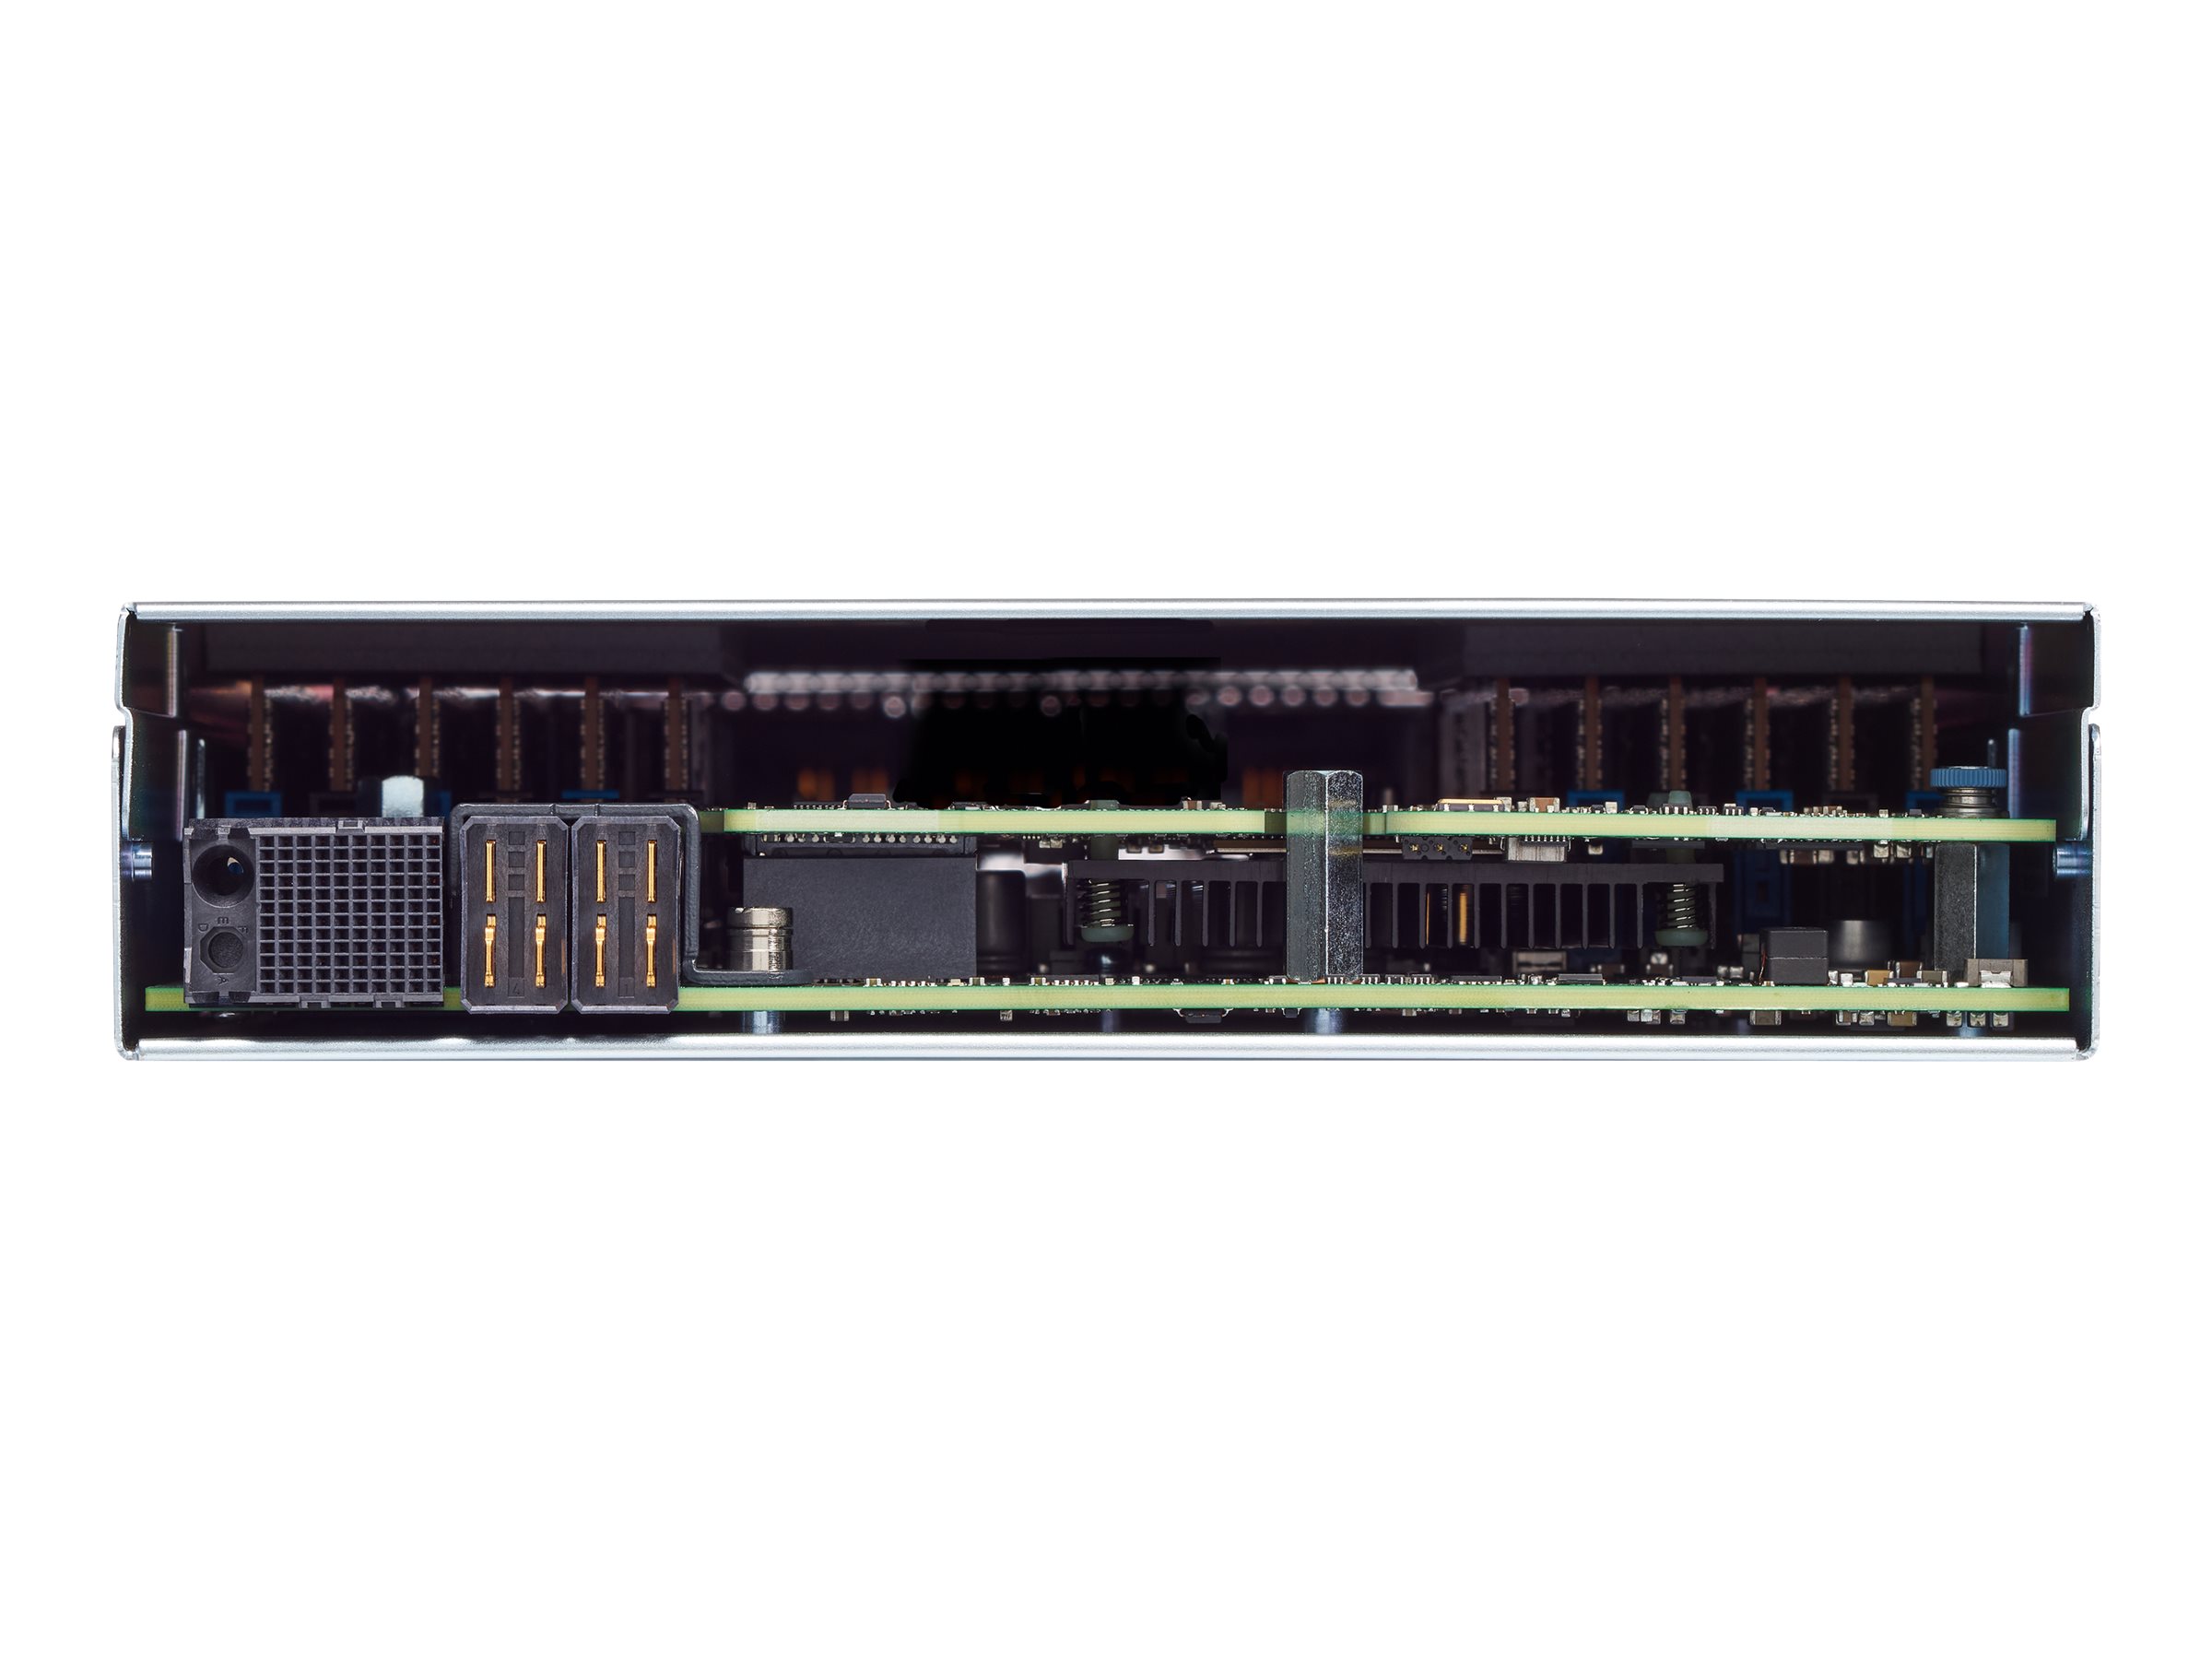 Cisco UCS B200 M5 Blade Server - Server - Blade - zweiweg - keine CPU - RAM 0 GB - SATA/SAS - Hot-Swap 6.4 cm (2.5")